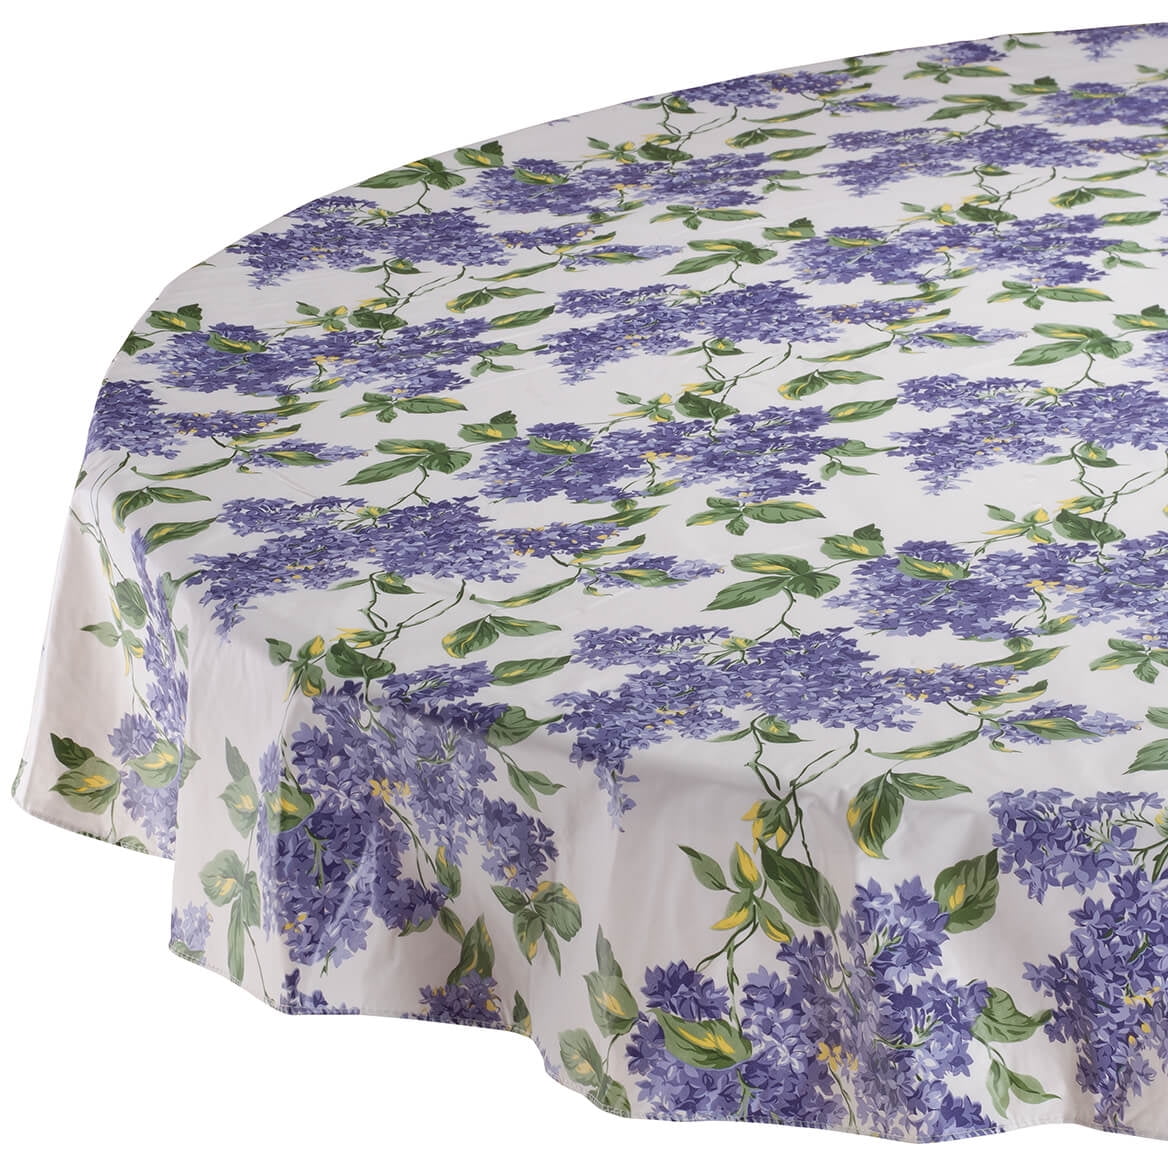 Lilac 100 Vinyl Tablecloth 60 Round, Vinyl Tablecloths Round